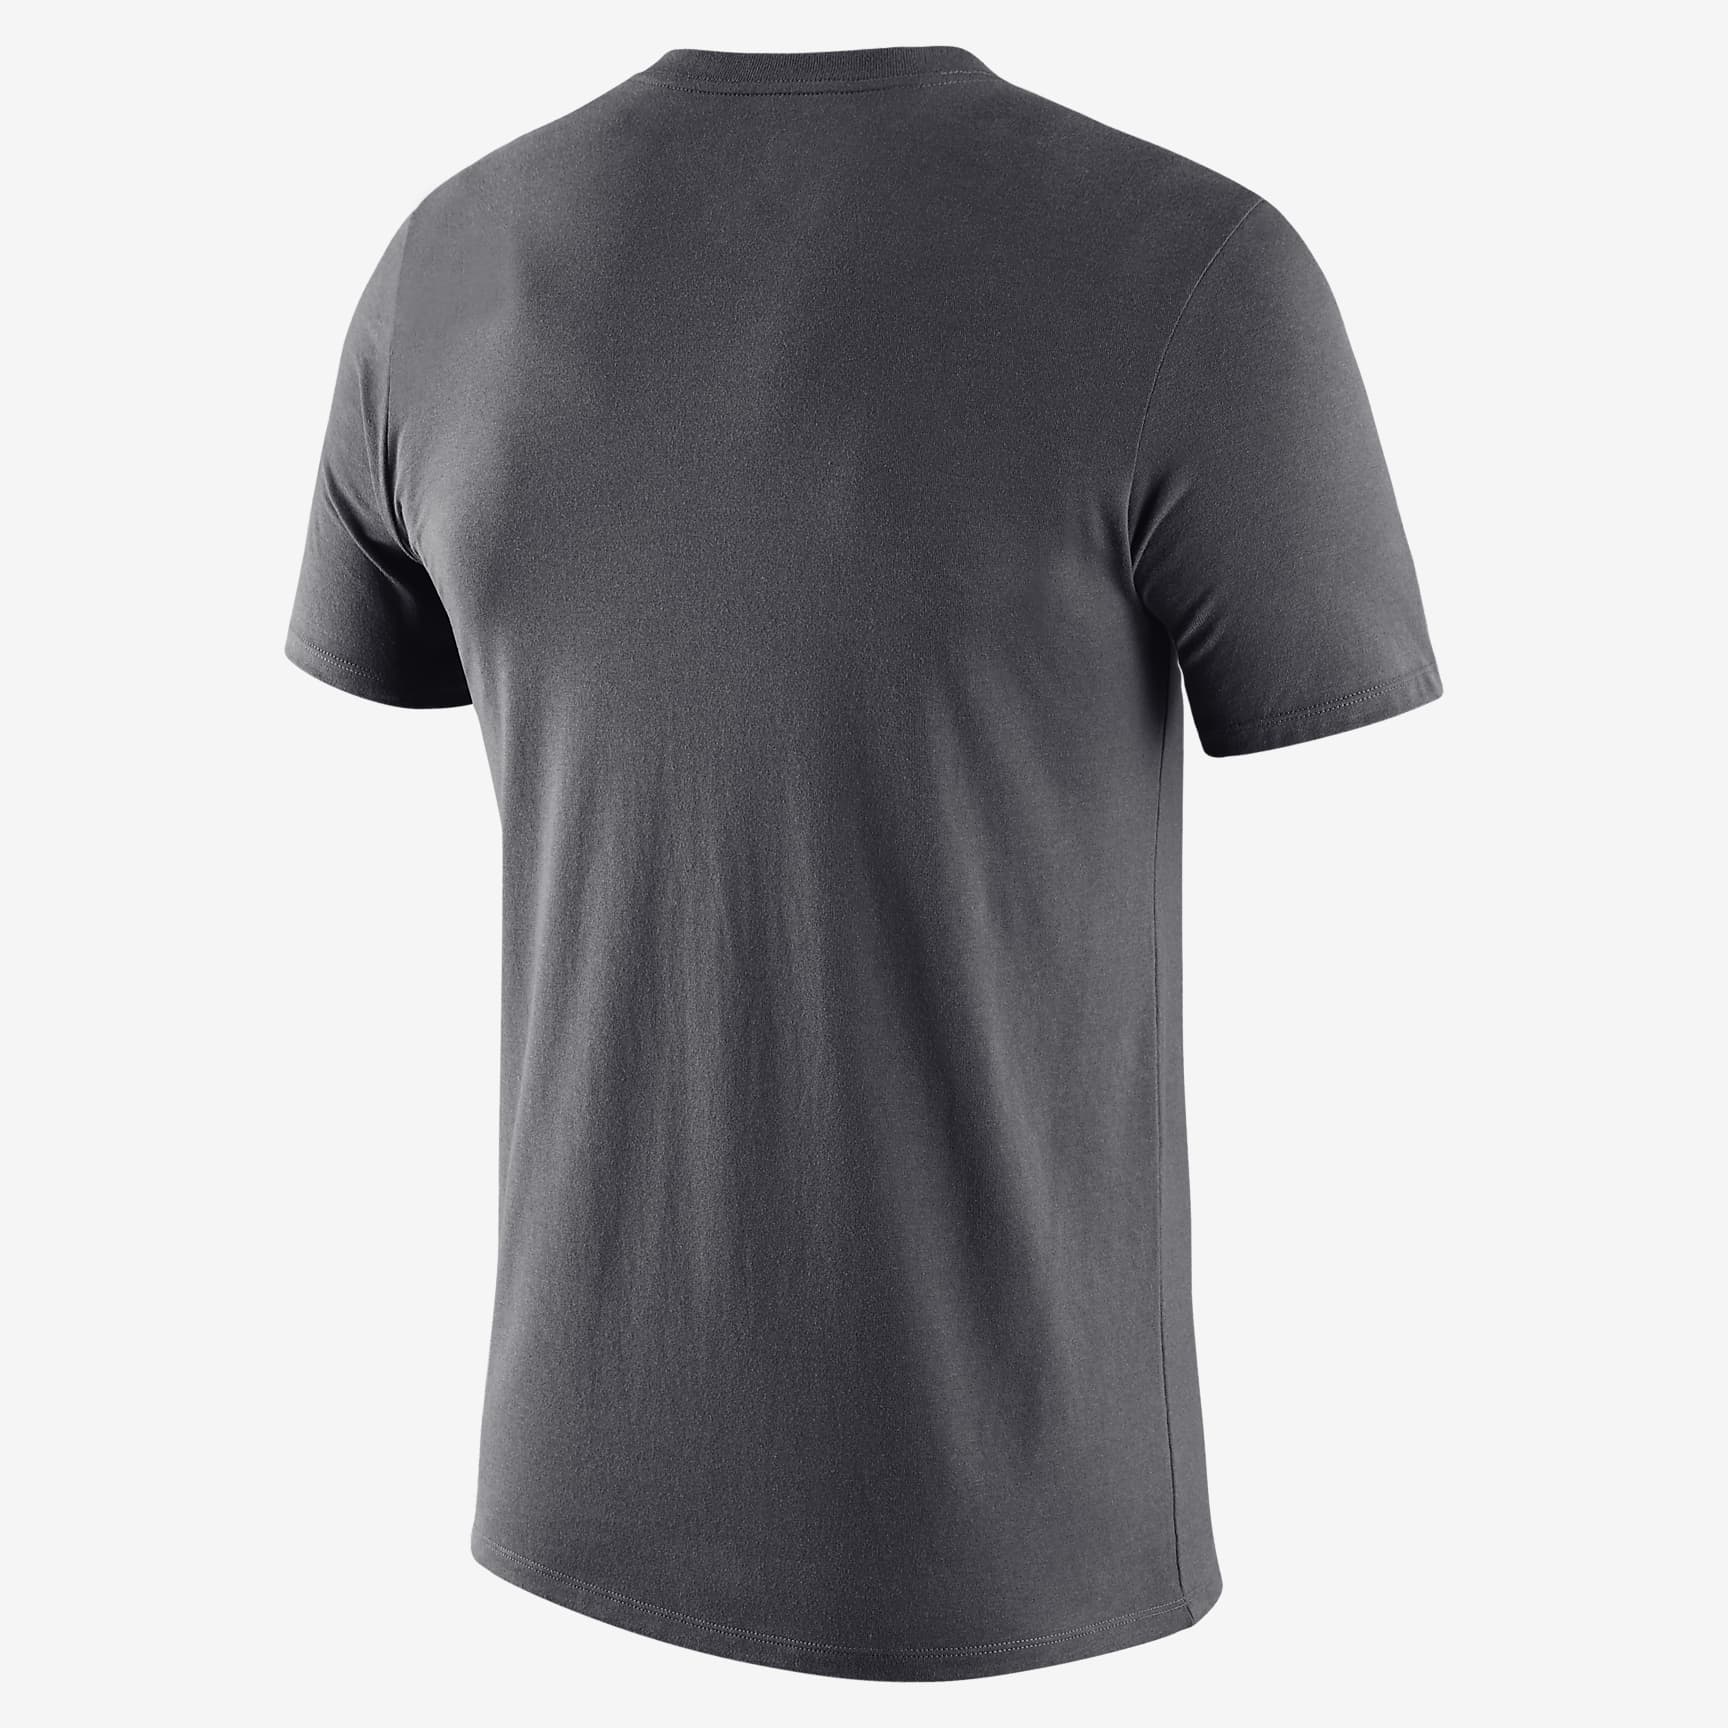 Nike College Retro (Villanova) Men's T-Shirt. Nike.com